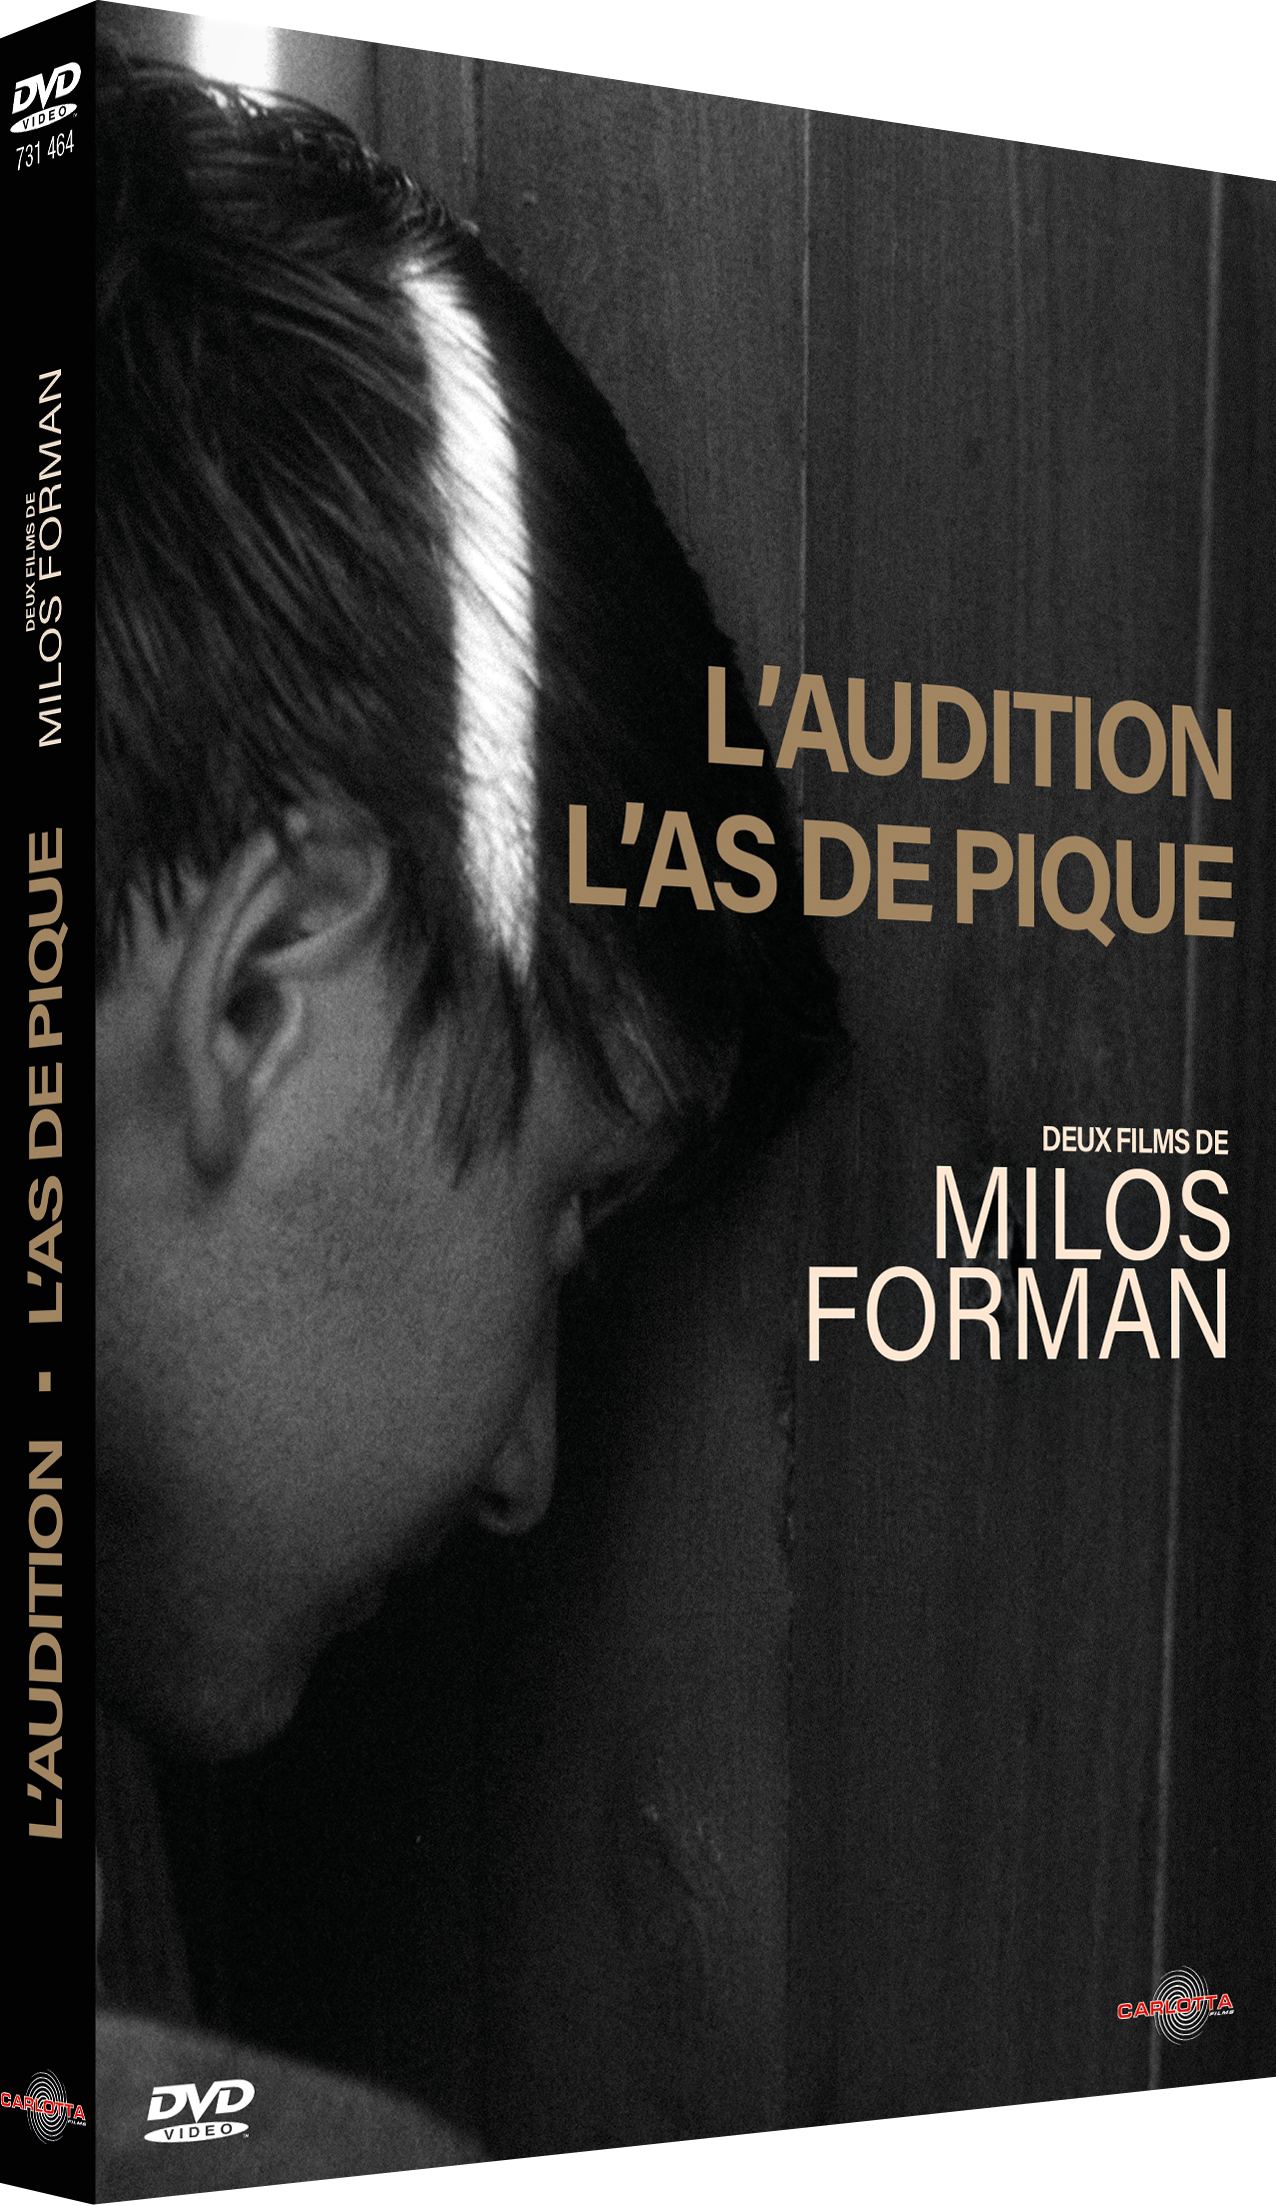 L'Audition + L'As de pique de Milos Forman